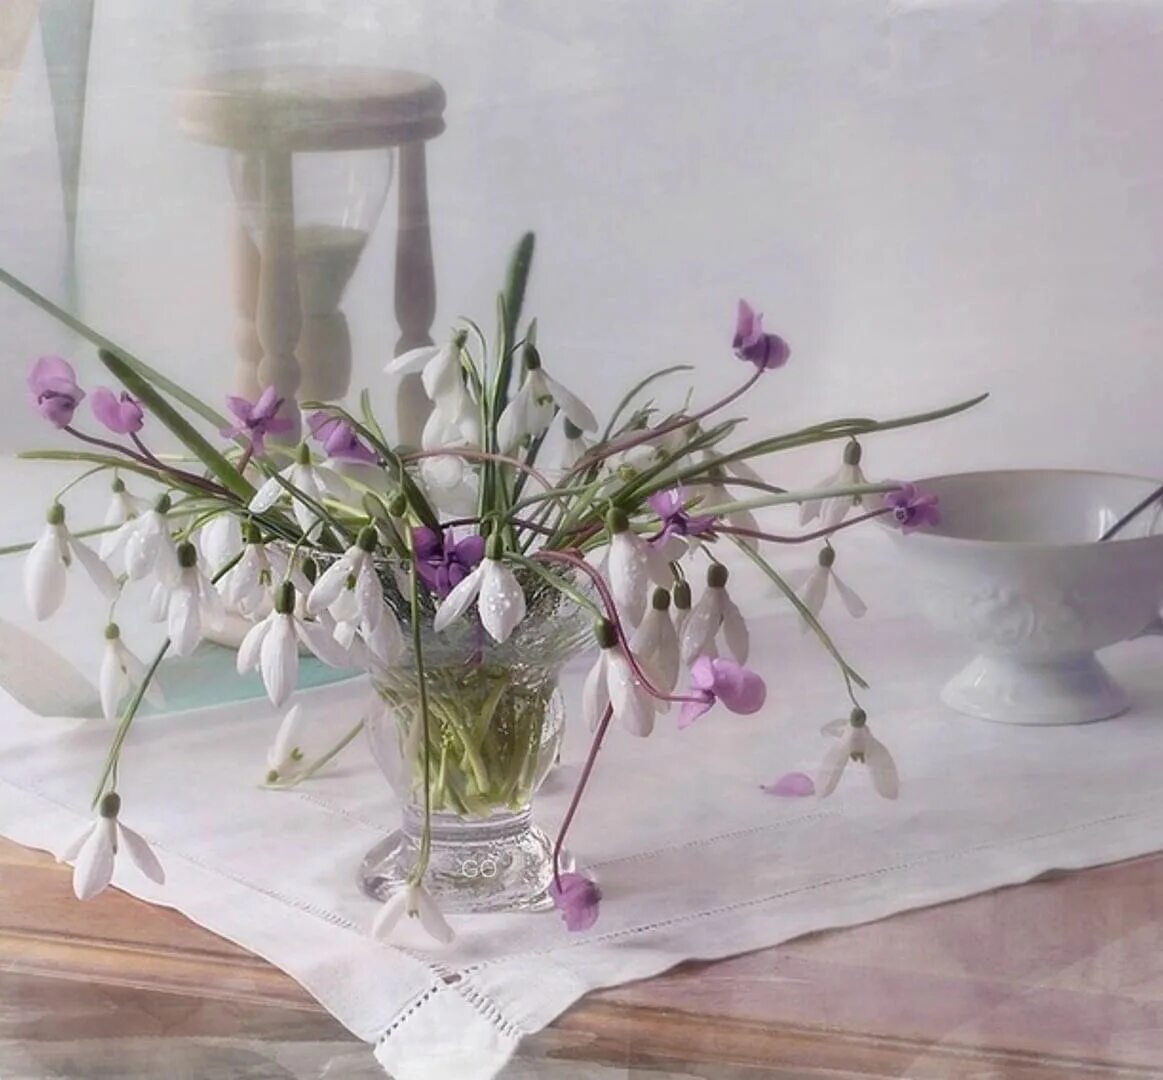 Теплая ласковая весенняя. Джим Фаррант натюрморт. Джим Фаррант художник. Натюрморт с весенними цветами. Весенние цветы в вазе.